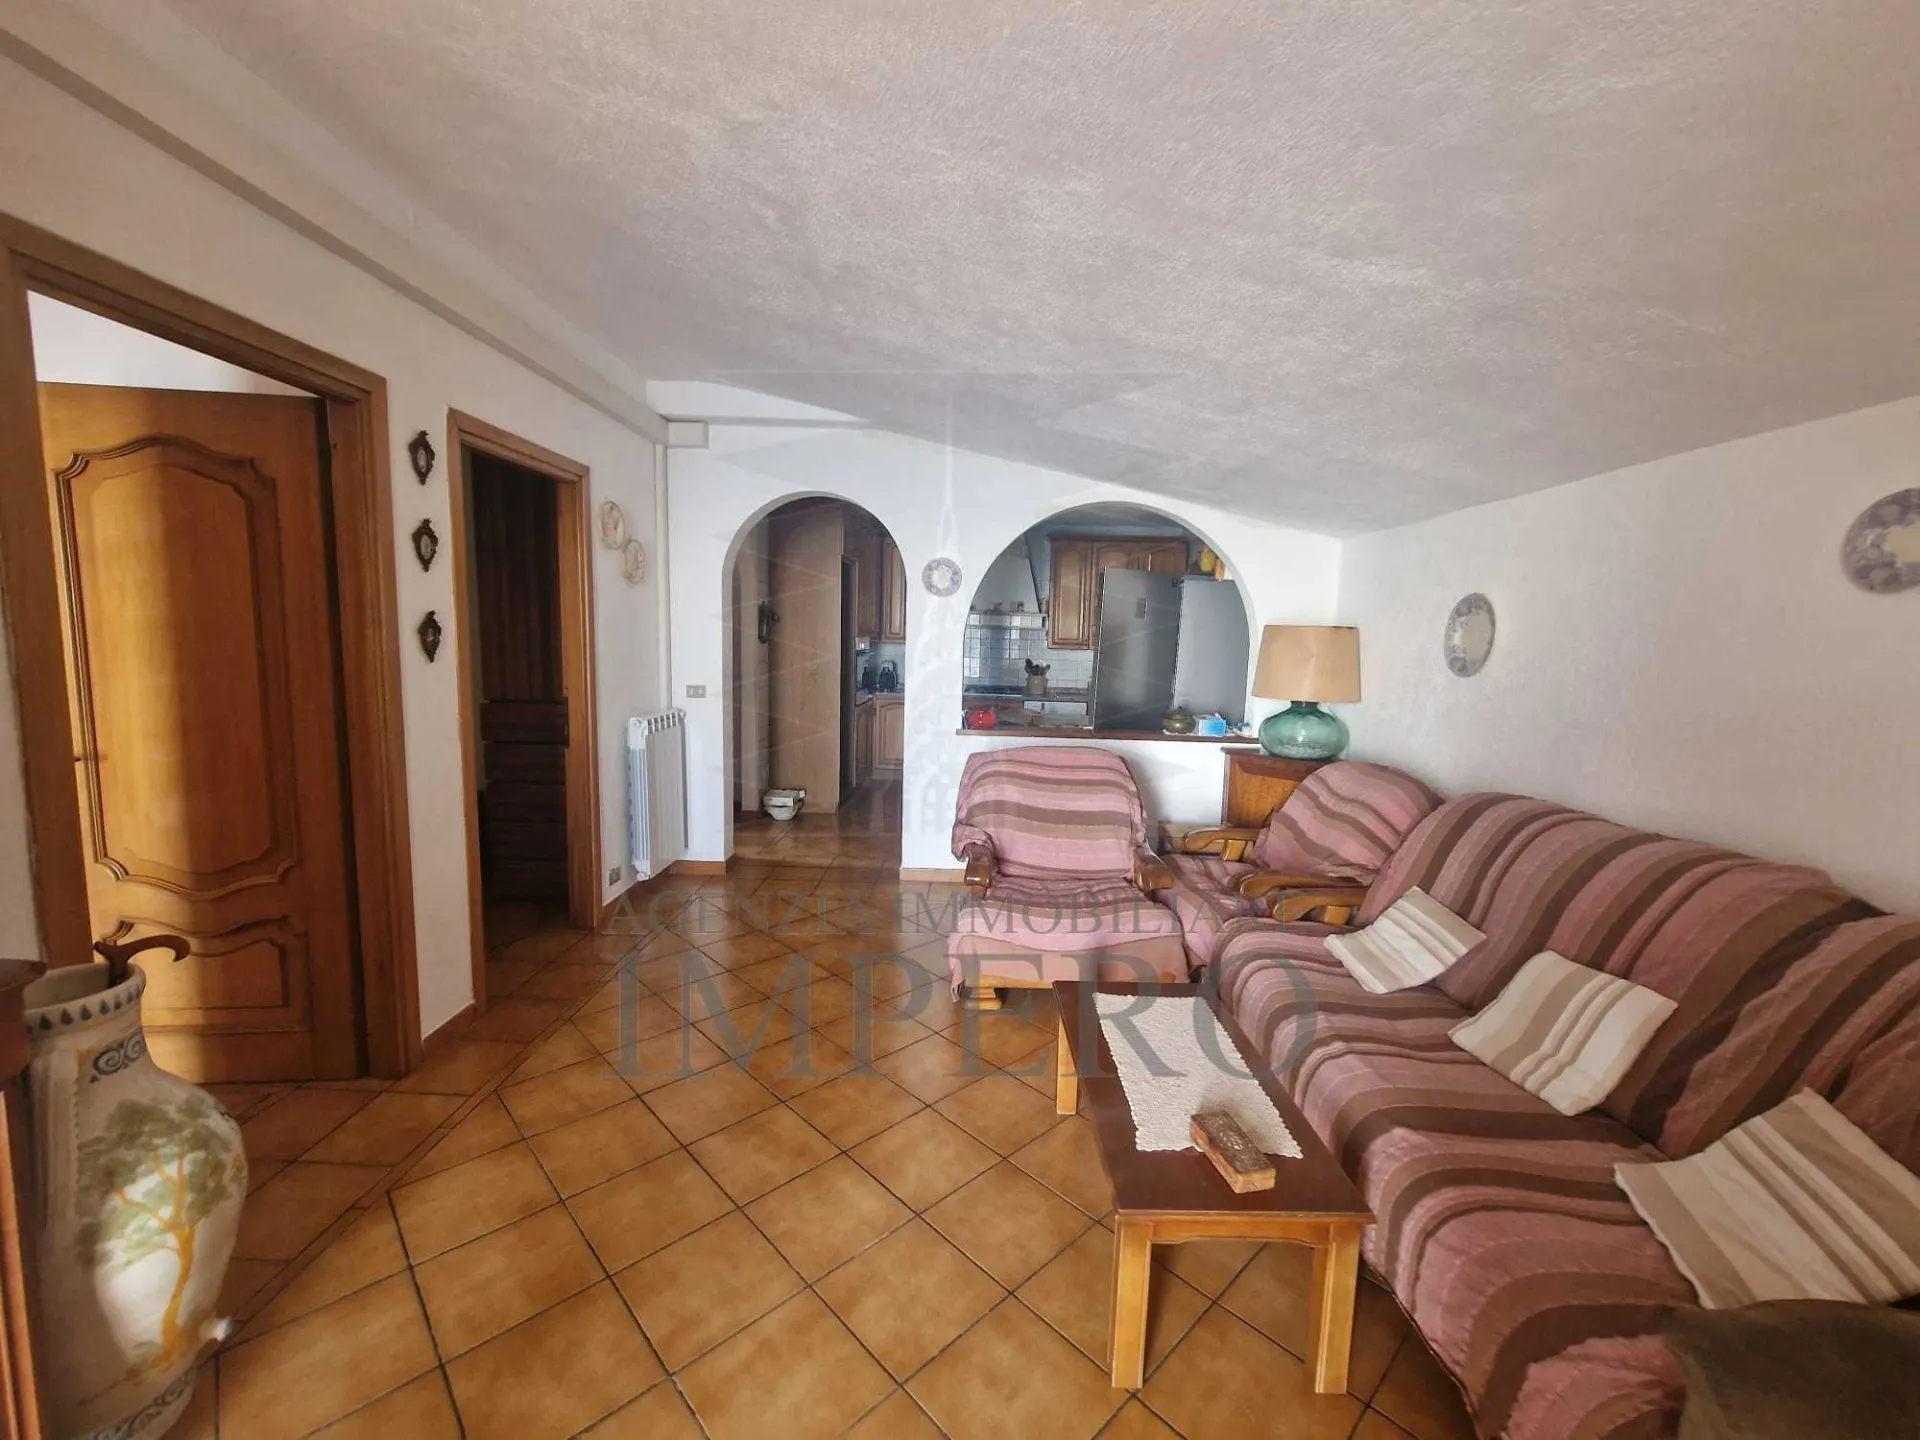 Immagine per Porzione di casa in vendita a Ventimiglia via Woronoff 37